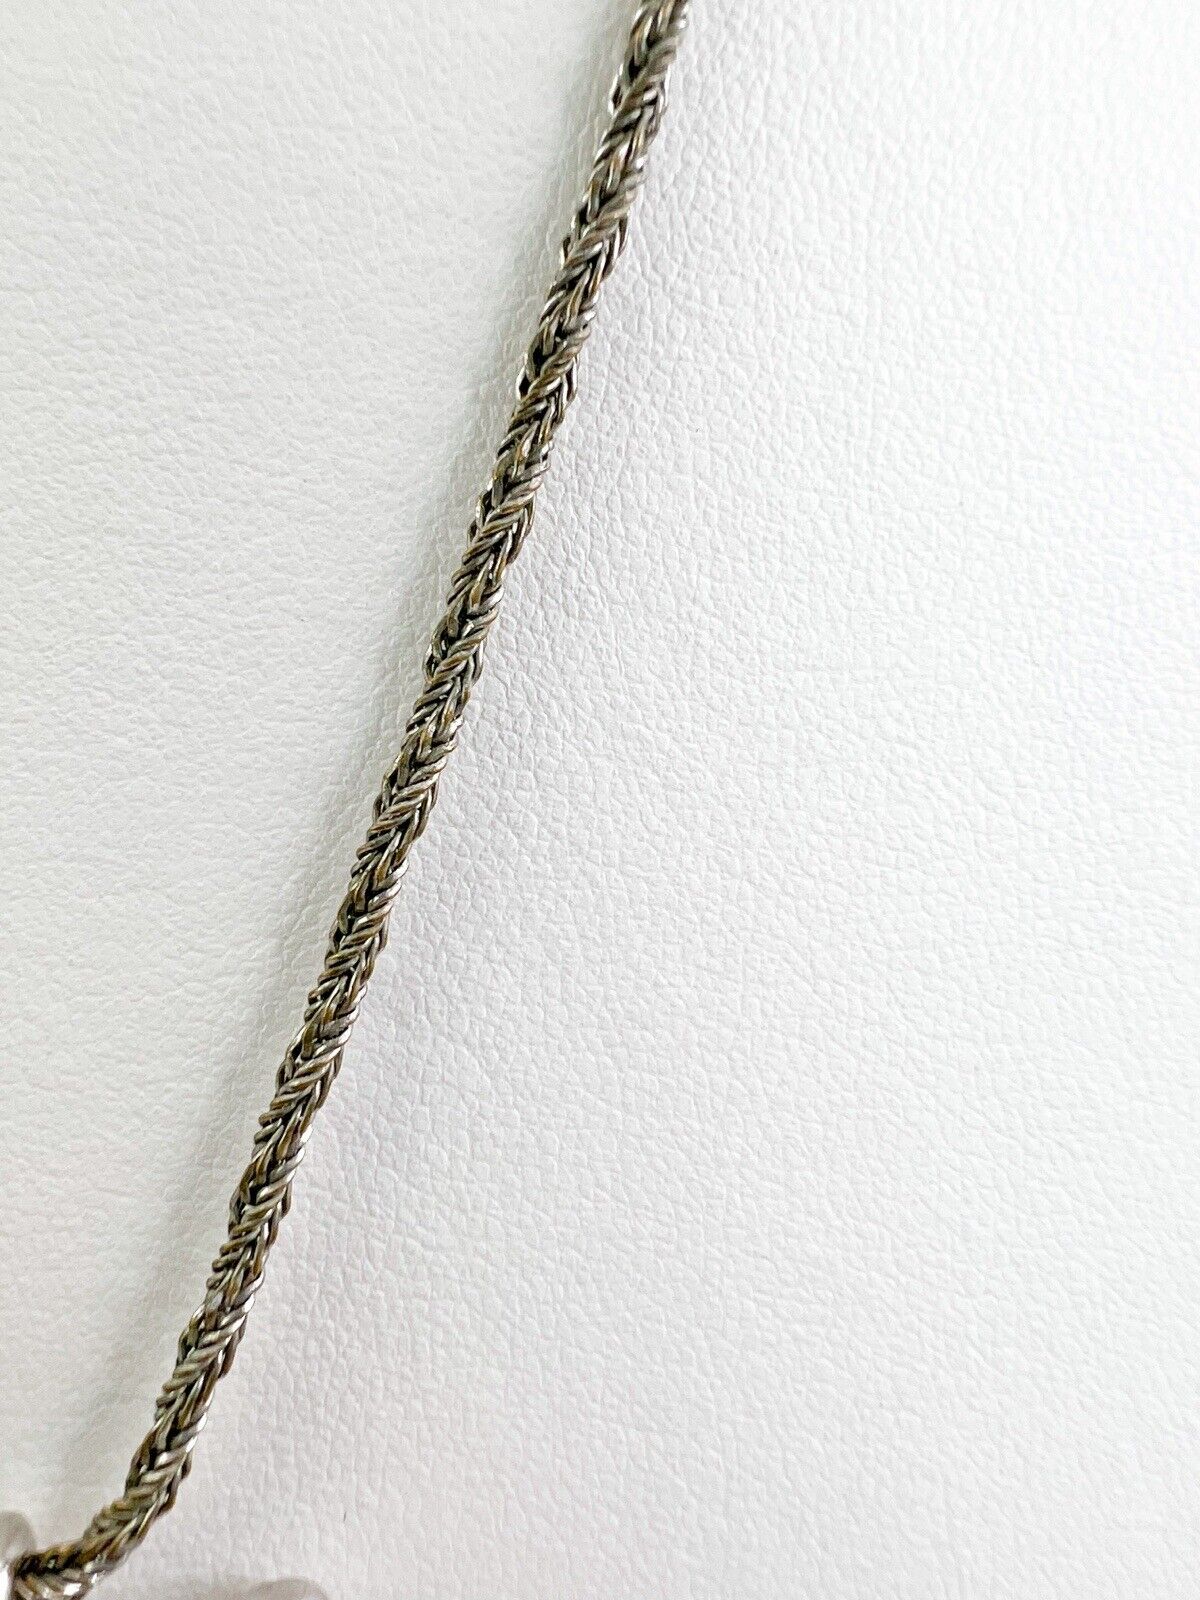 Vintage Christian Dior necklace,  CD Dior necklace, CD logo necklace, Choker Necklace Silver, Gift for her, Vintage Jewelry, Necklace Silver